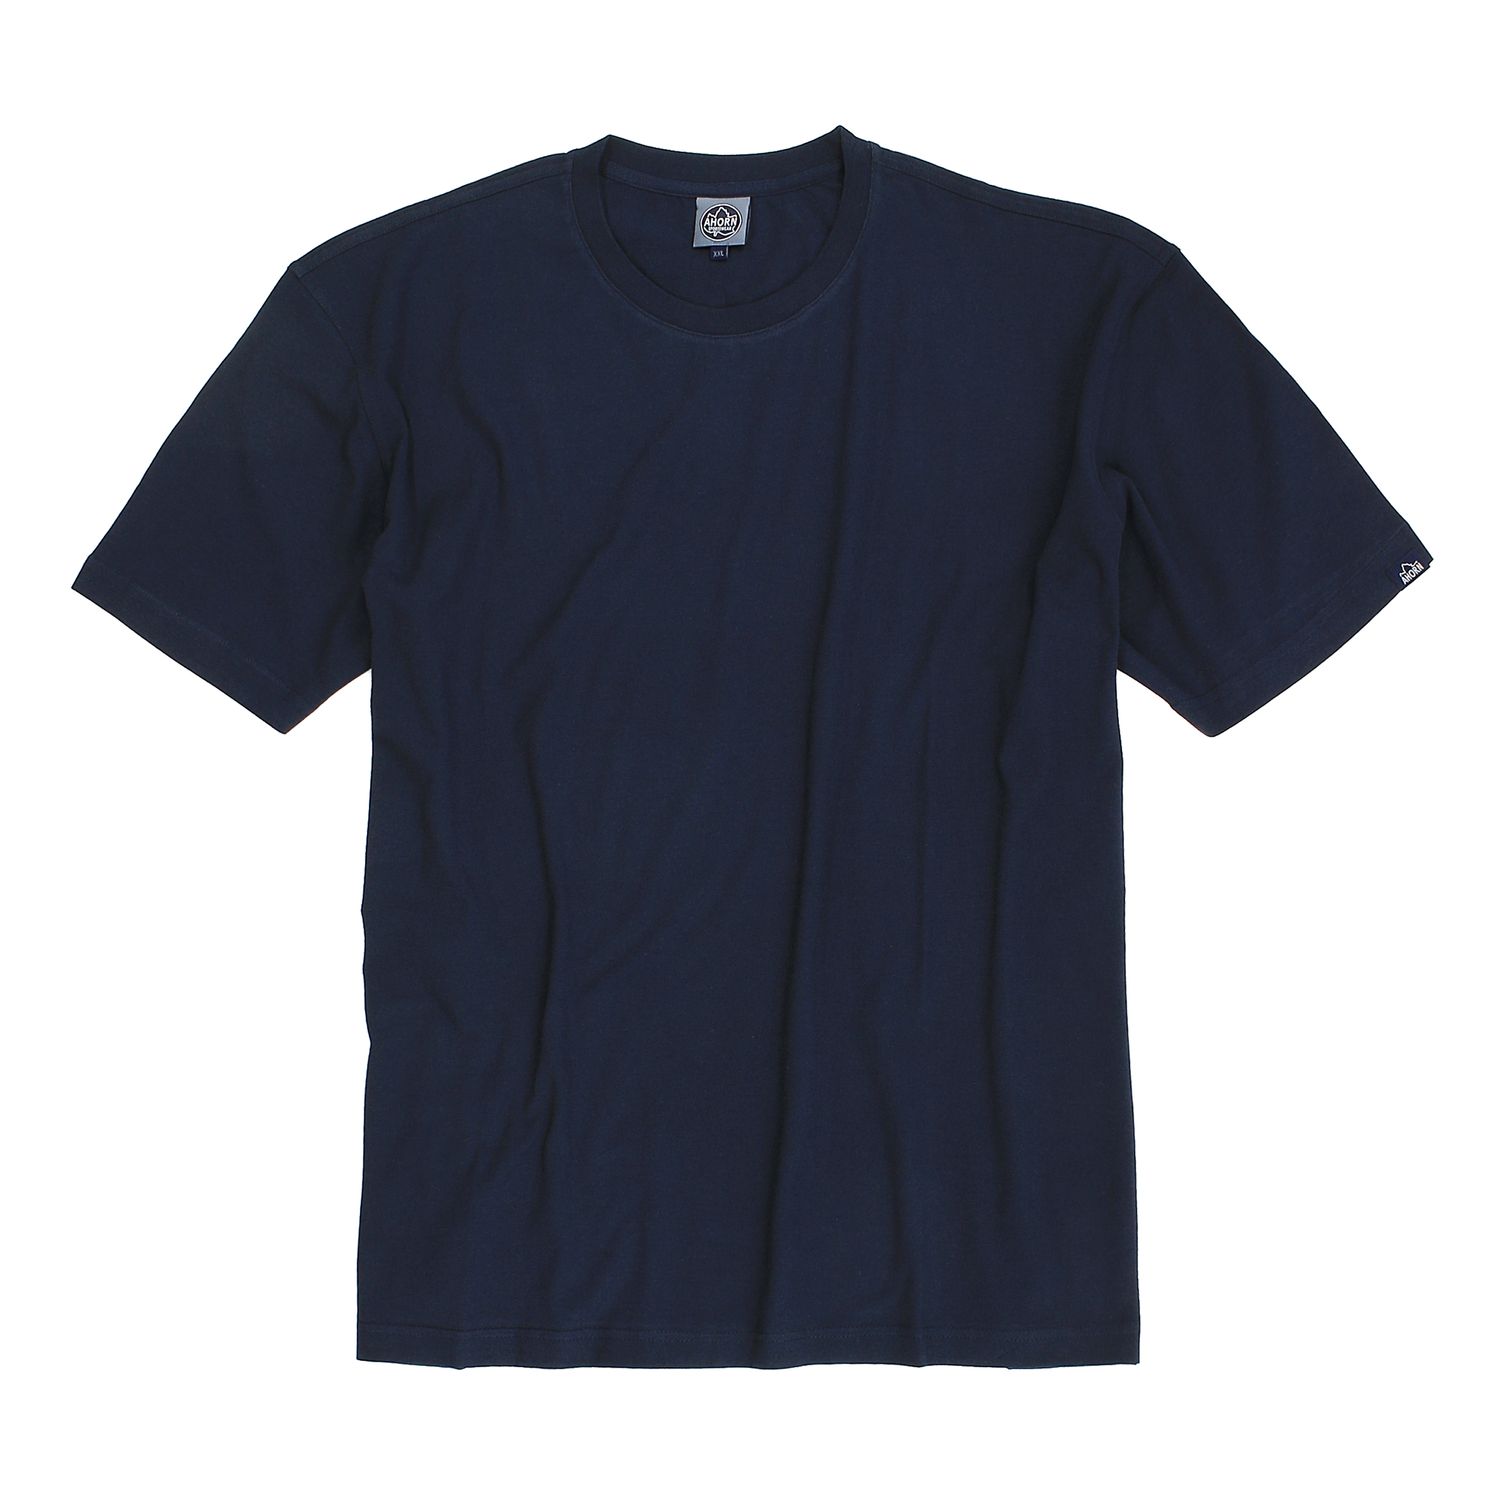 T-shirt bleu foncé col rond -emballage double- by Ahorn Sportswear grandes tailles jusqu'au 10XL